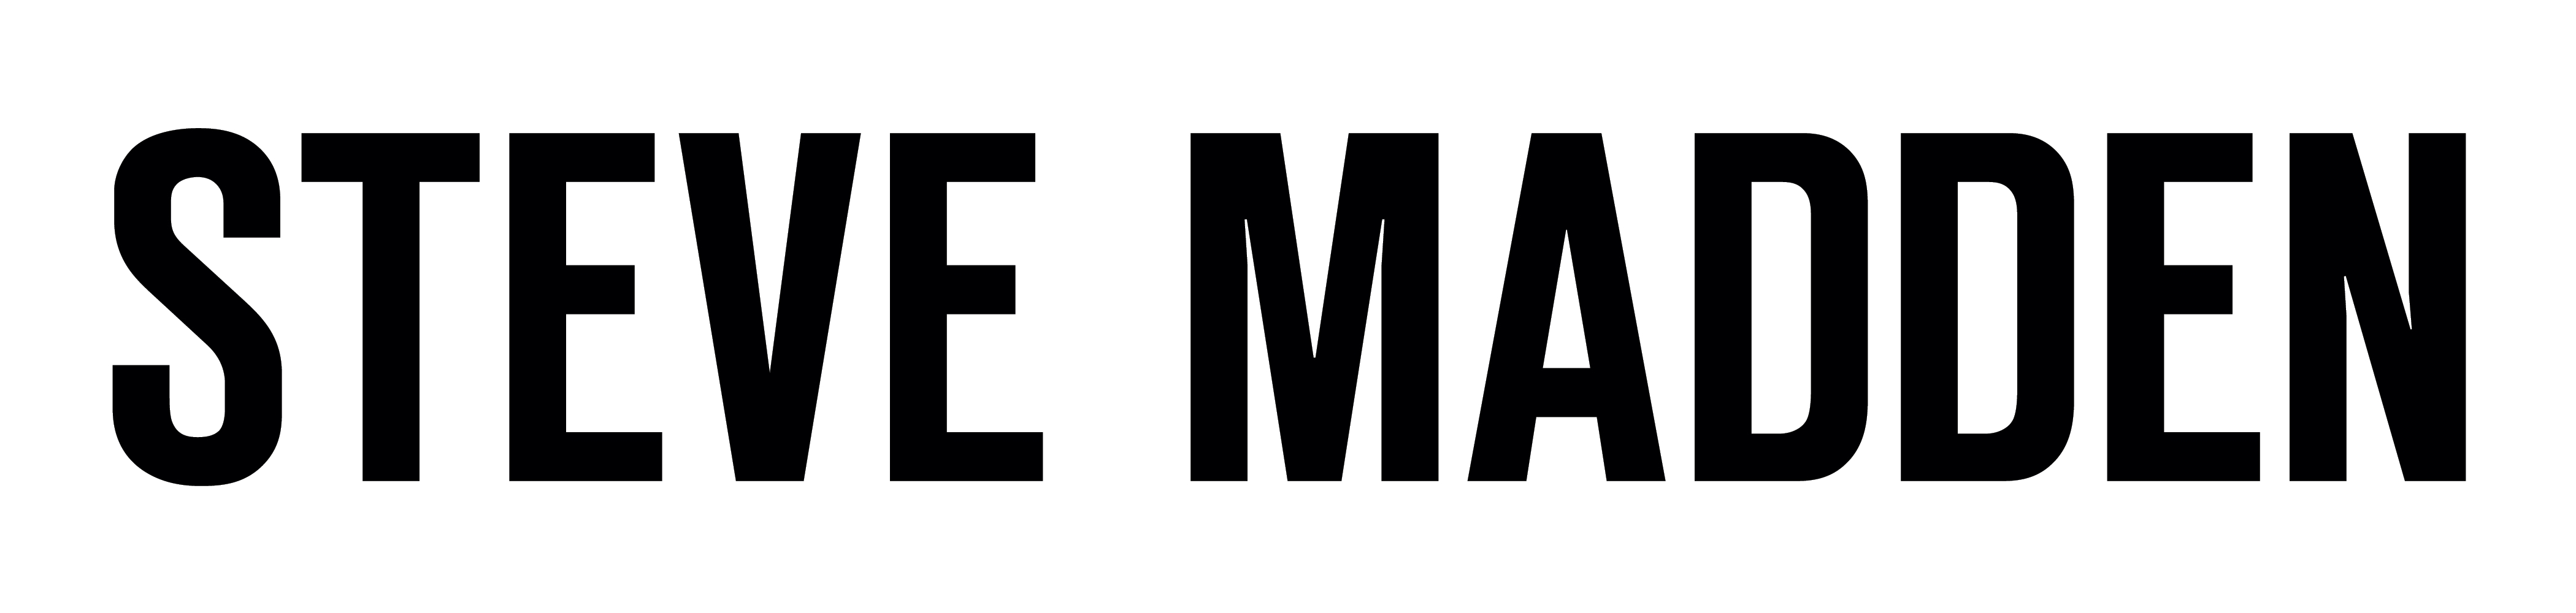 Steven Madden Brand Logo